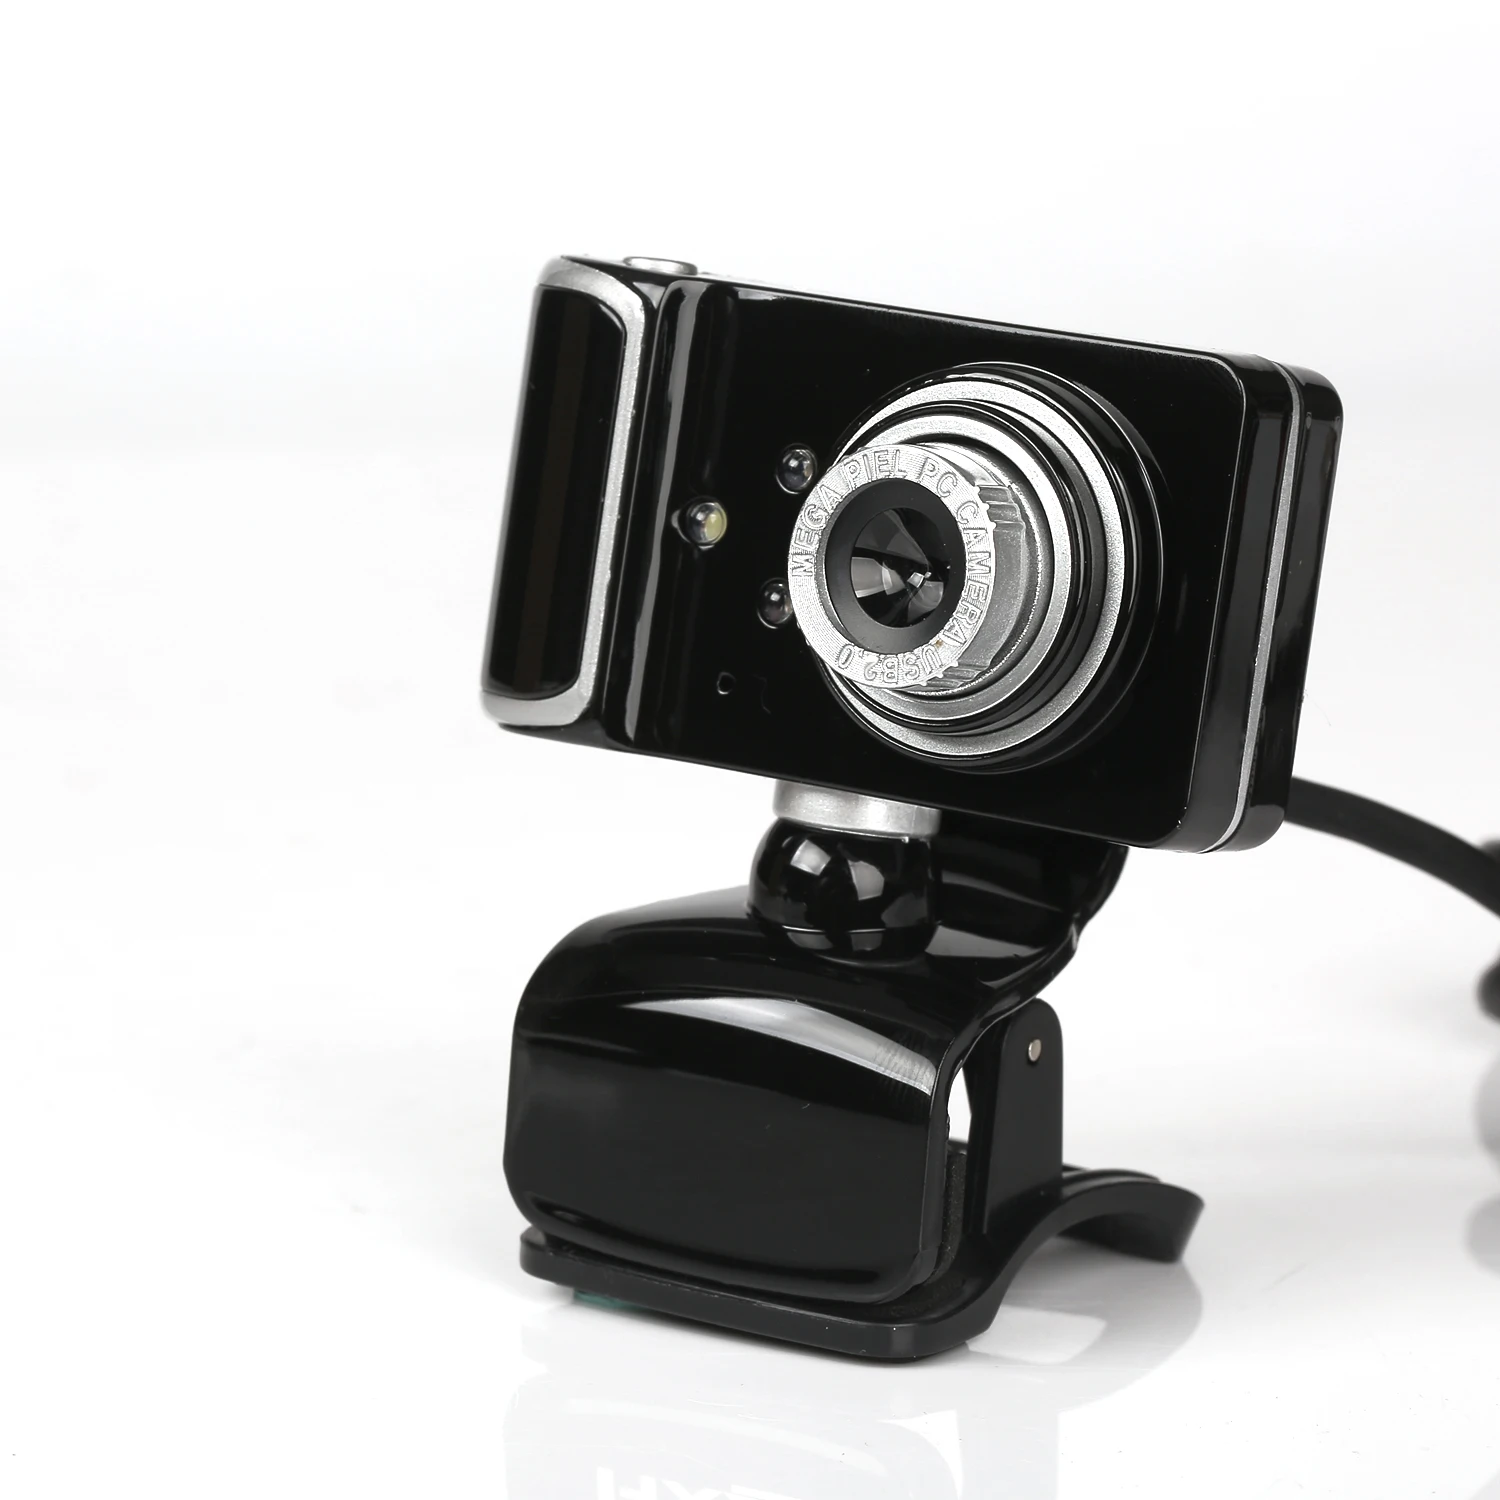 Веб-камера USB 2,0, веб-цифровая камера Full HD 480 P, веб-камеры с микрофоном, клипса на 2,0 мегапикселя, cmos-камера, веб-камера для компьютера